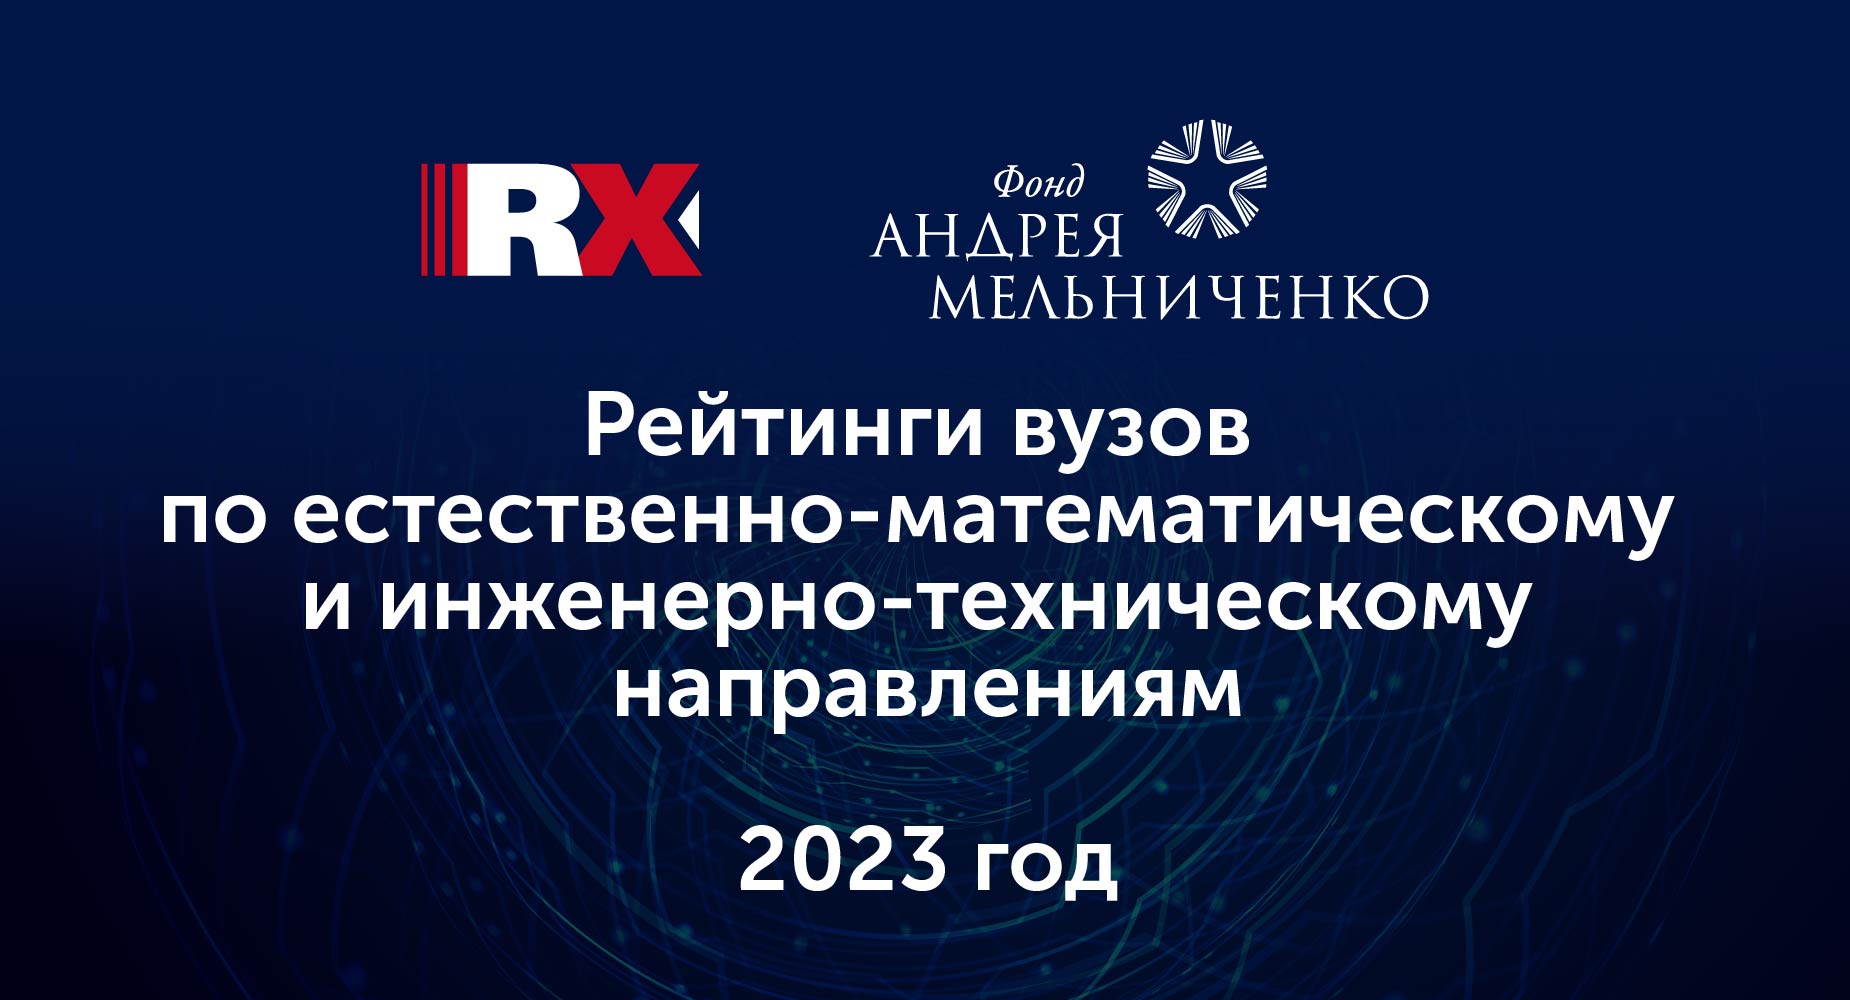 Агентство RAEX при поддержке Фонда Андрея Мельниченко обновило рейтинги вузов 